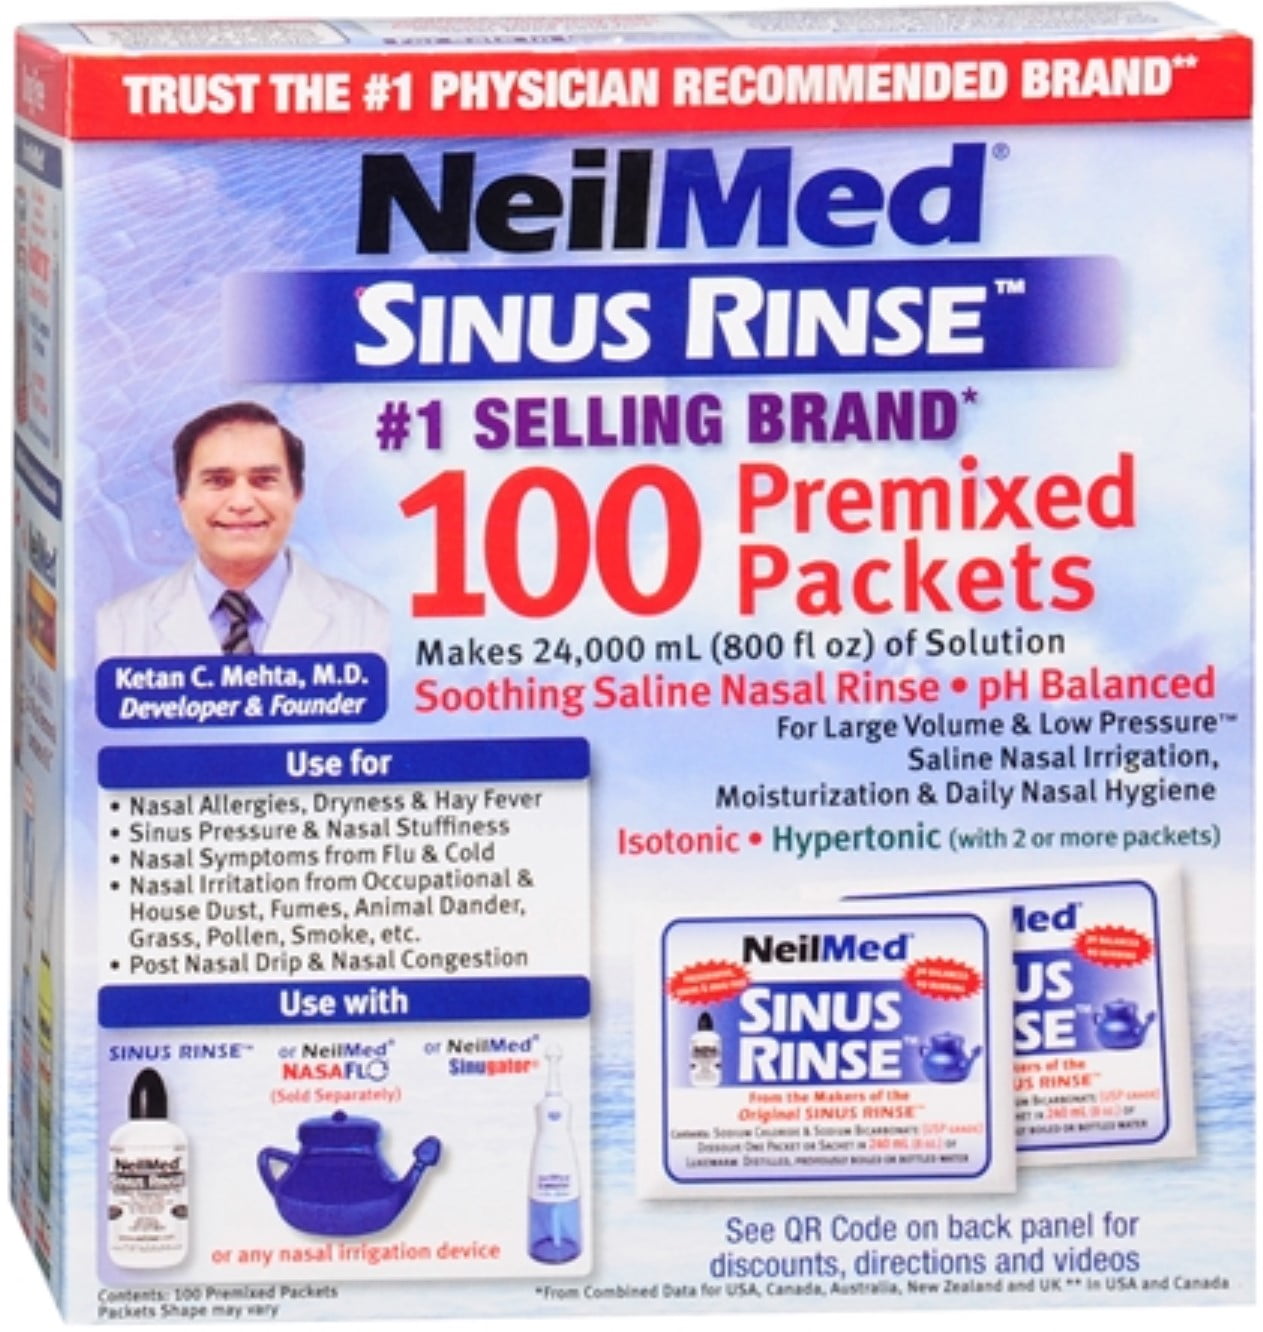 NEILMED SINUS RINSE REFILL – Peter Street Pharmacy